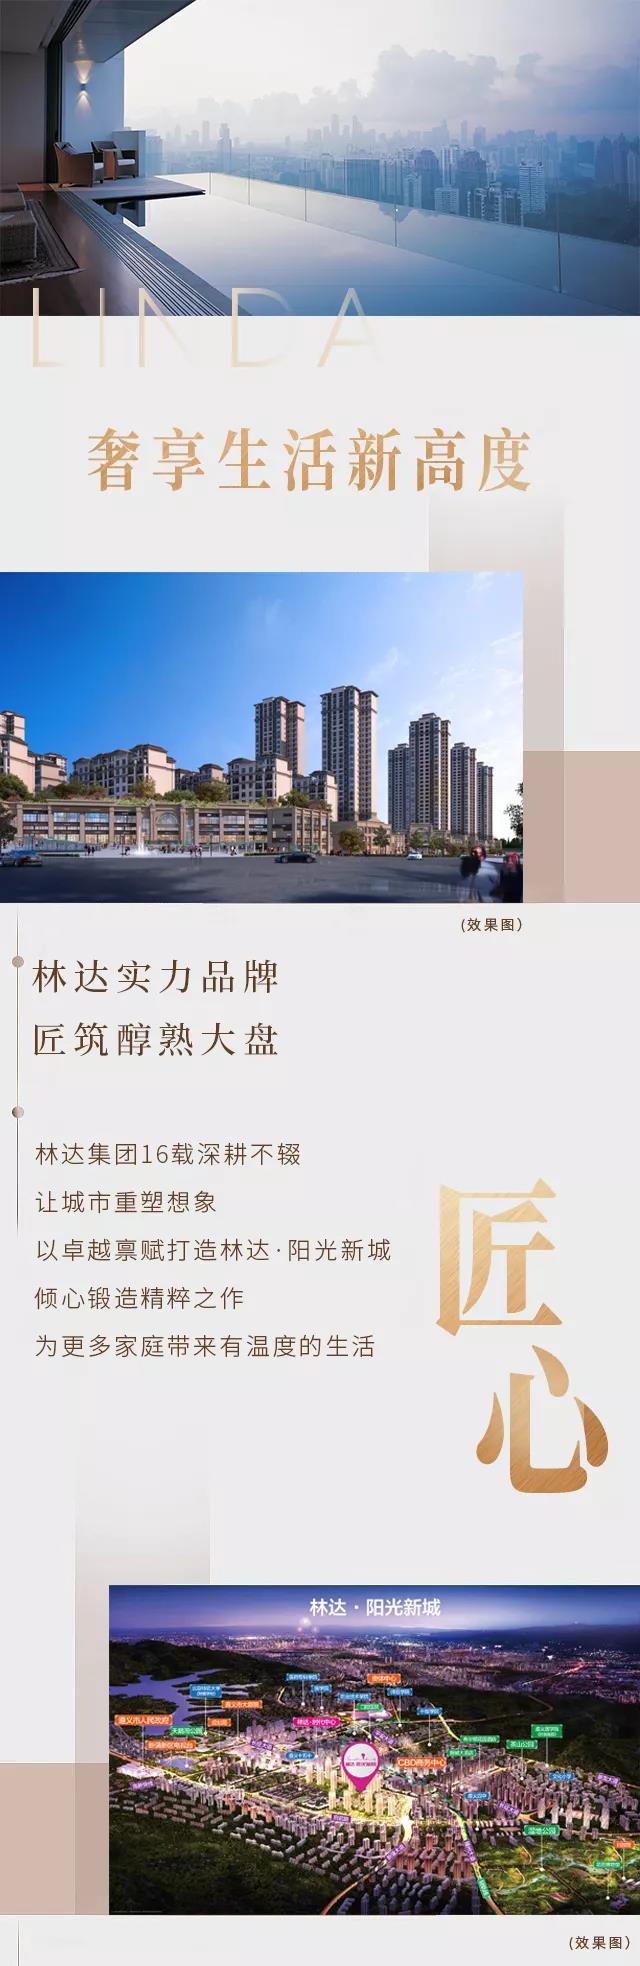 林达·阳光新城 家之向往 尽享生活新高度-中国网地产